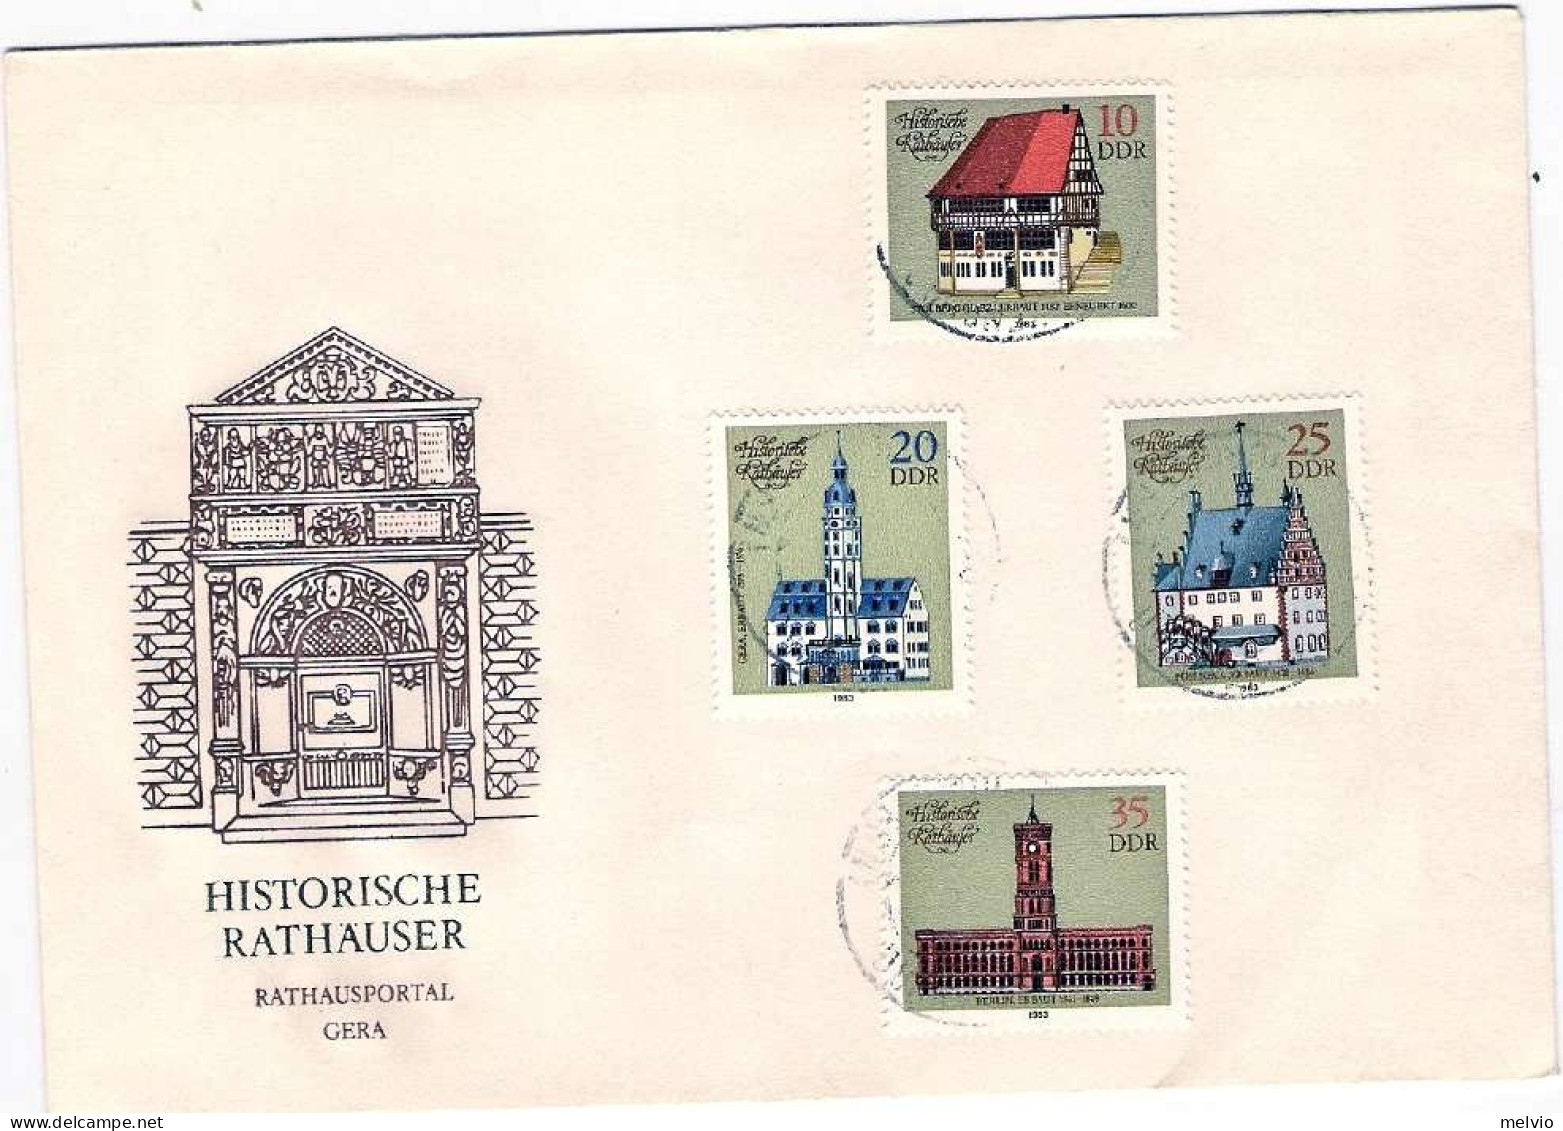 1983-Germania DDR S.4v."Municipi Storici"su Fdc Illustrata, Annullo Di Favore - Storia Postale